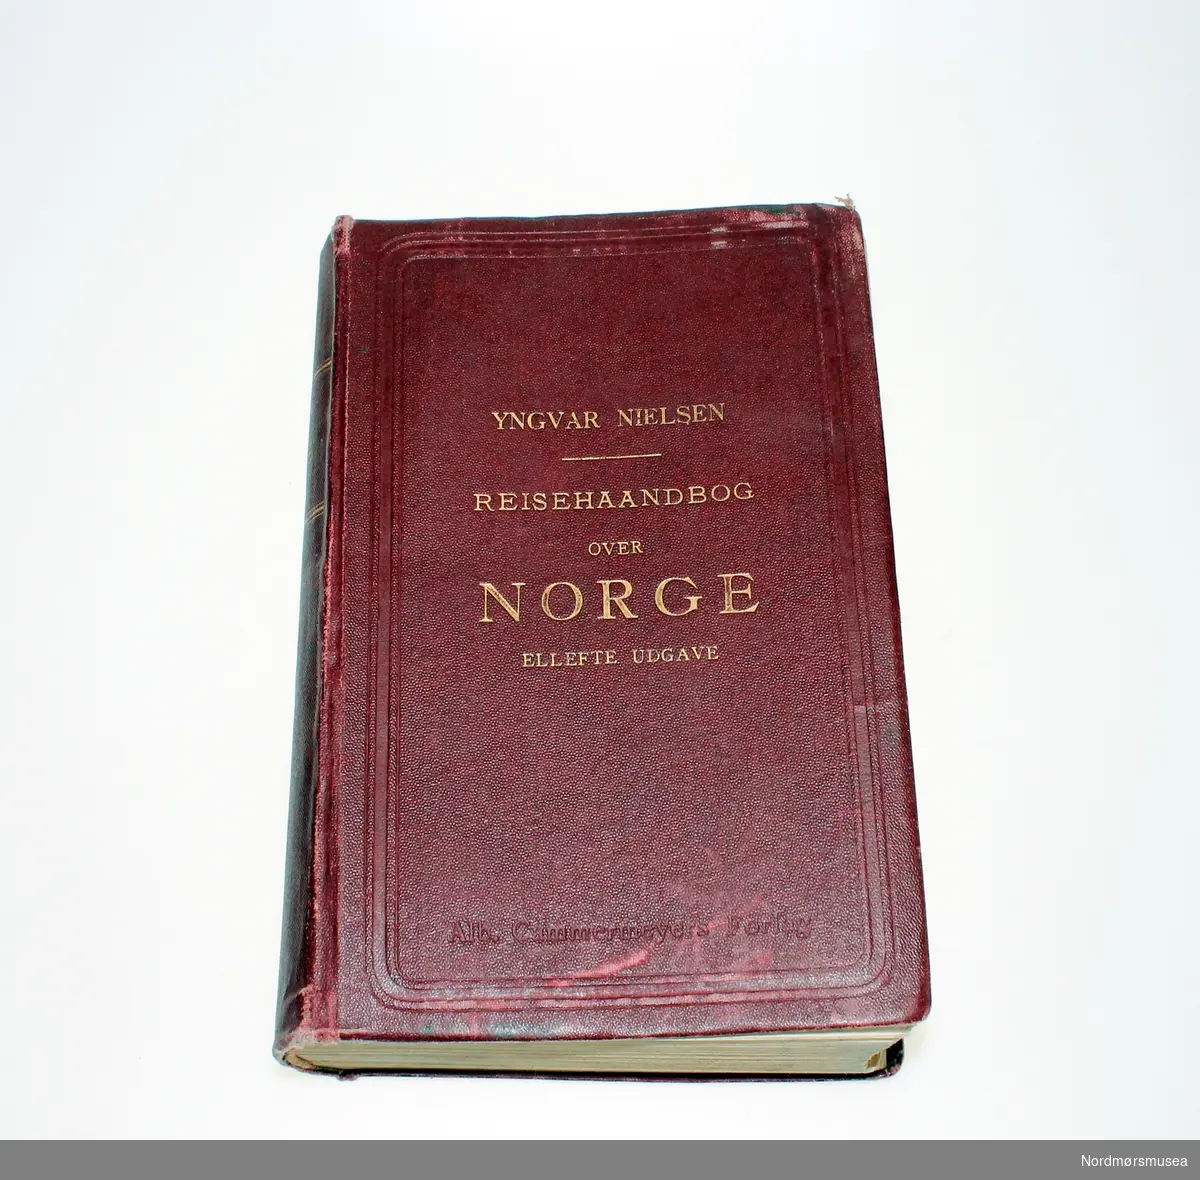 Dr. Yngvar Nielsen: "Reisehaandbok over Norge. Større udgave. 11. omarbeidede og betydelig forøgede udgave med 1 oversigtskart, 4 byplaner samt 46 specialkarter"